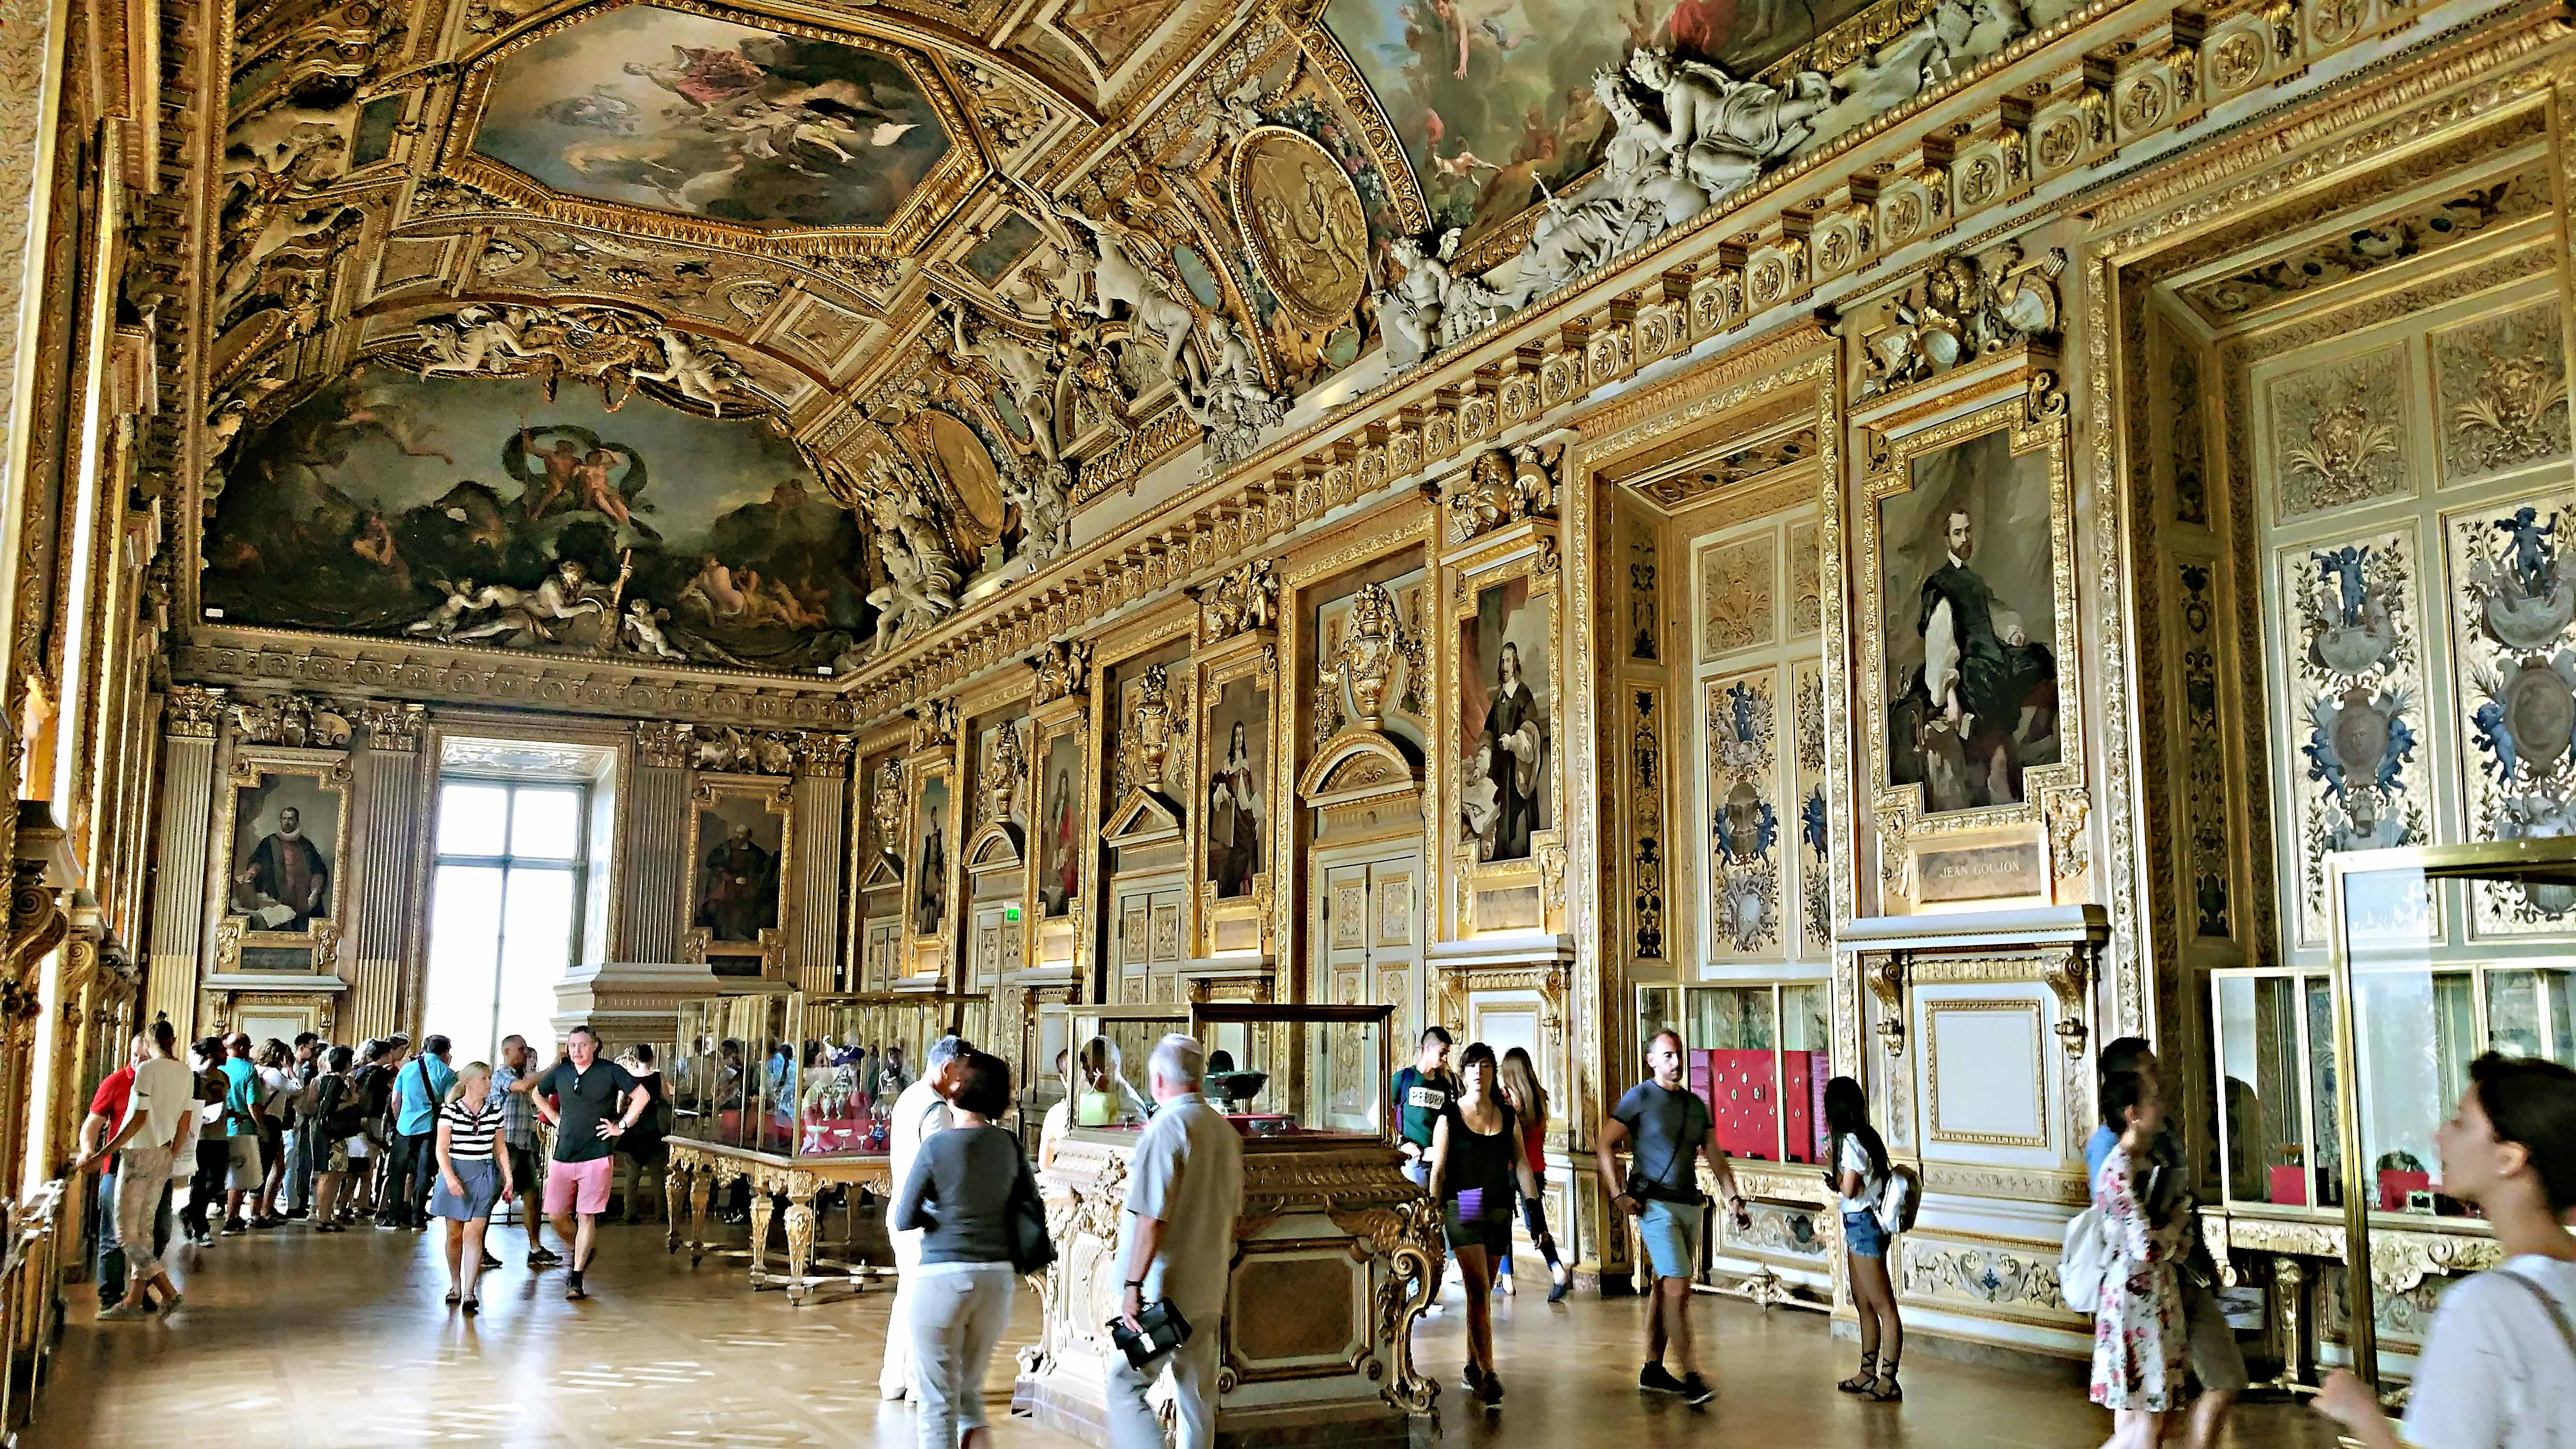 Die Galerie d'Apollon als Teil des Louvre ist berühmt für ihre hohen Gewölbedecken mit gemalten Dekorationen.